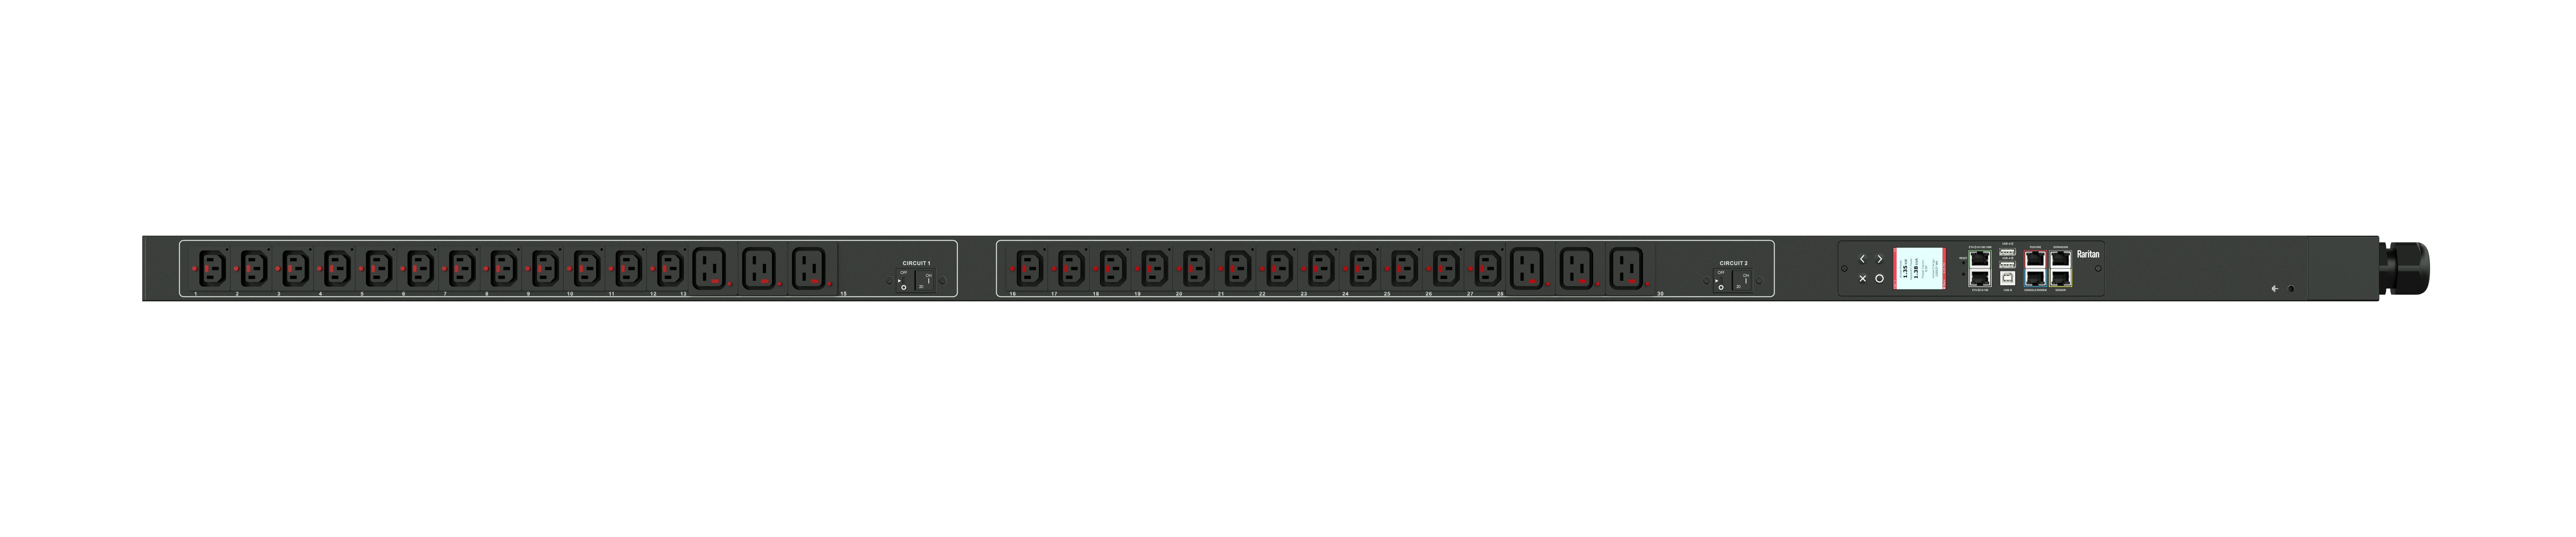 1 5 19 41. Raritan Rack PDU px3-1923x2. Блок распределения питания (PDU) TLK-RPI-SW-a02-m21-BK. Блок вертикальных розеток 42u. Блок розеток c19.